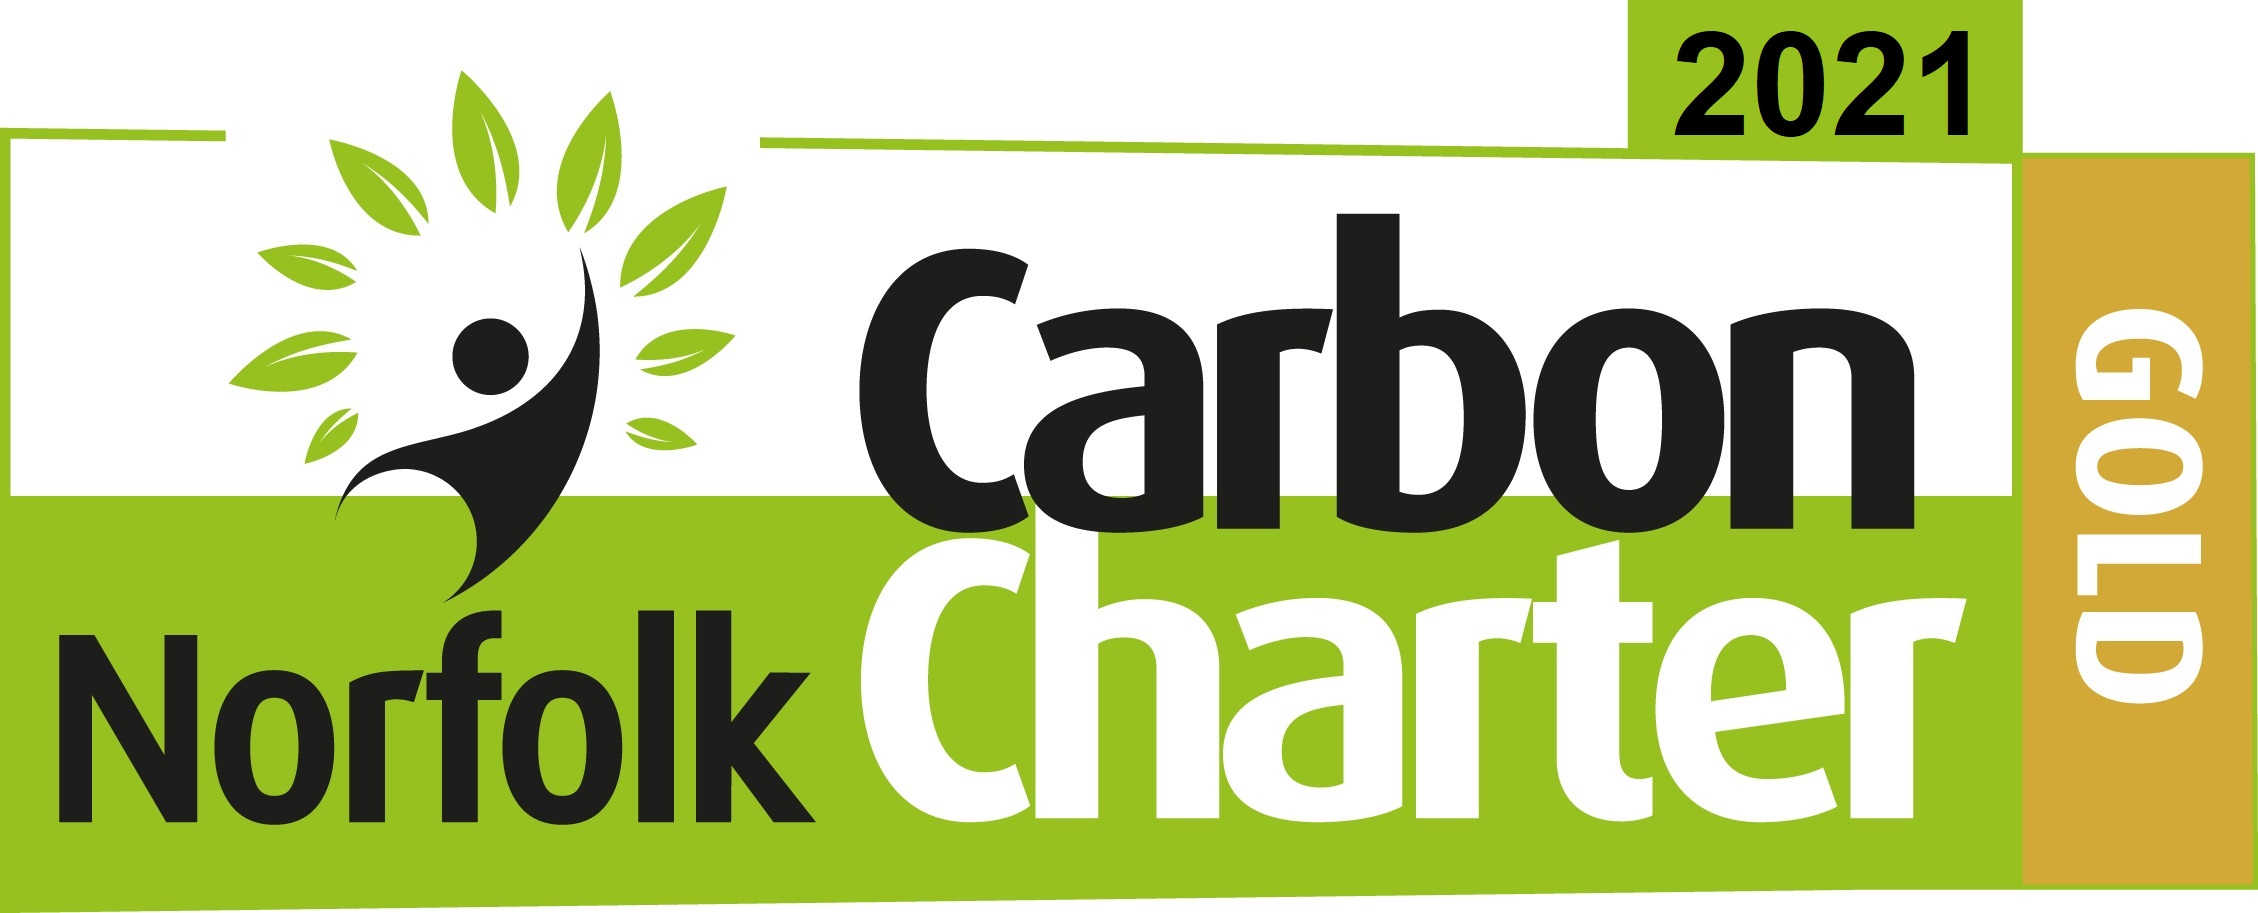 Norfolk Carbon Charter Gold 2021